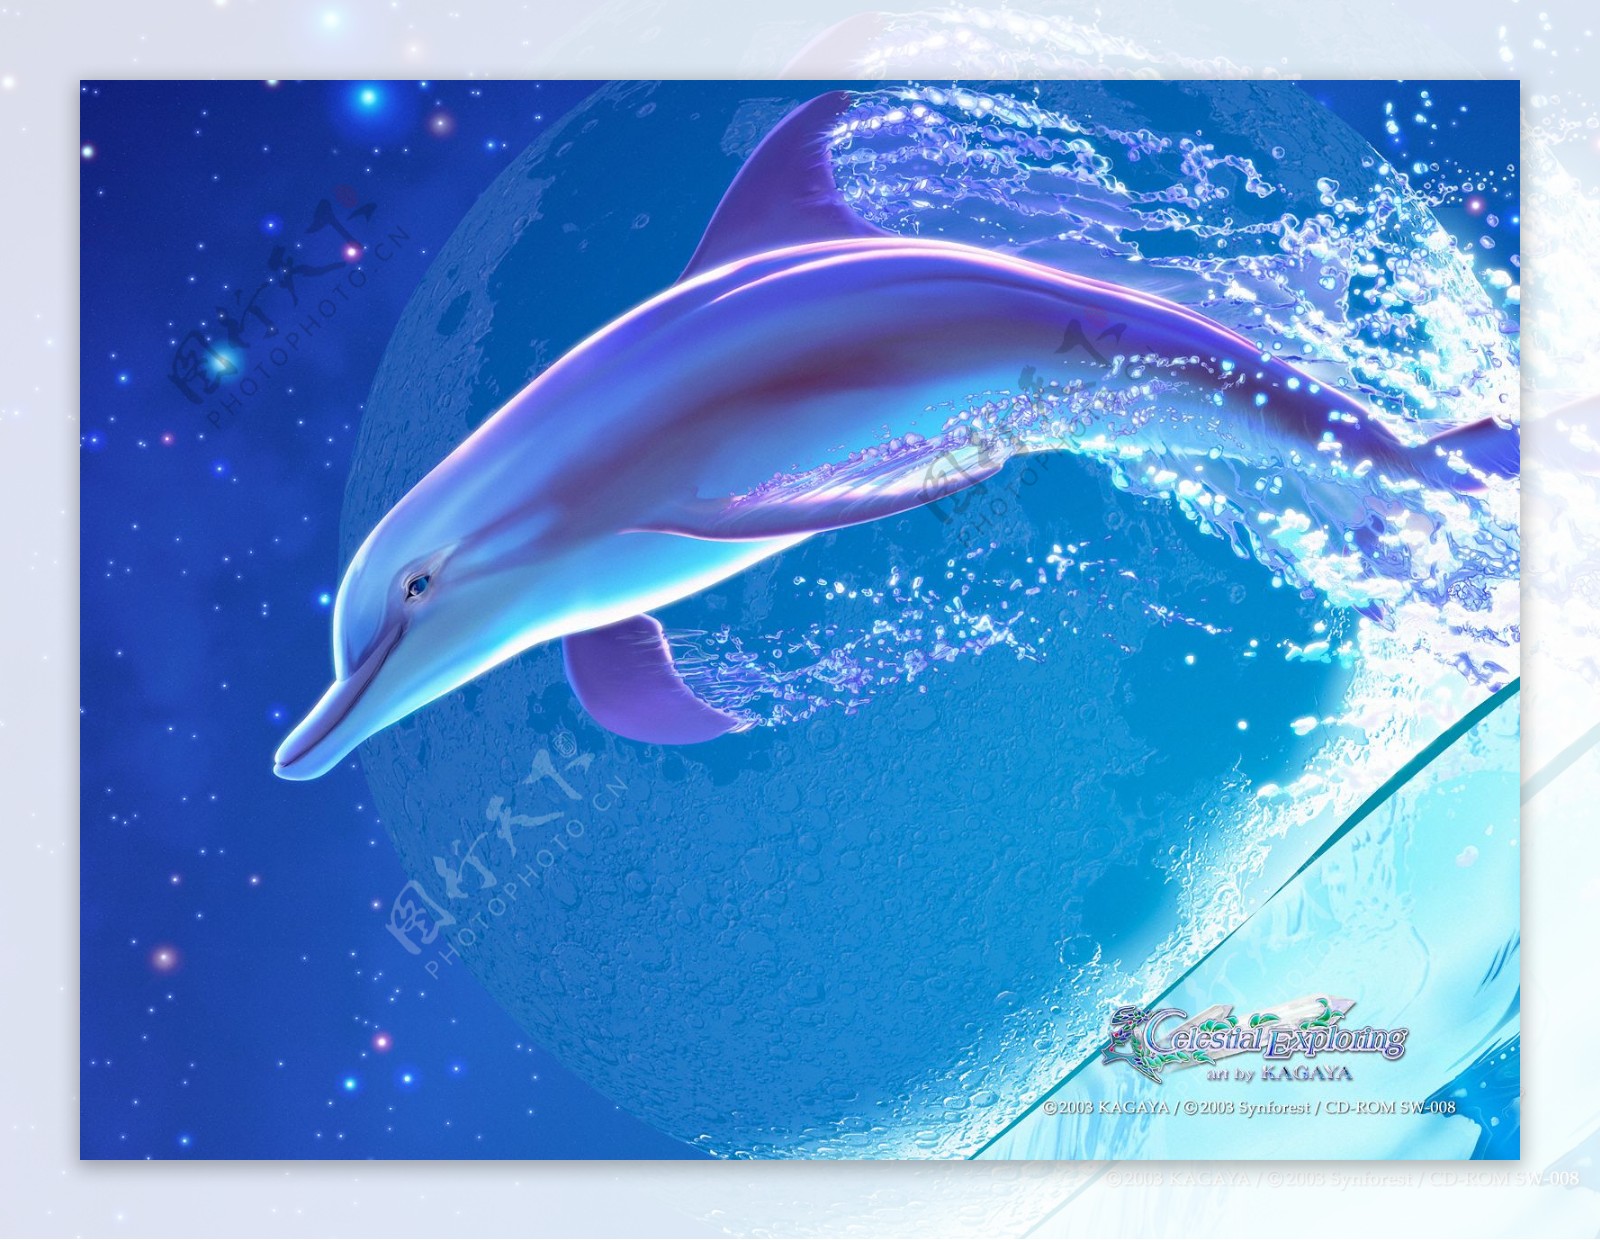 梦幻蓝色海底海豚梦幻动漫桌面背景